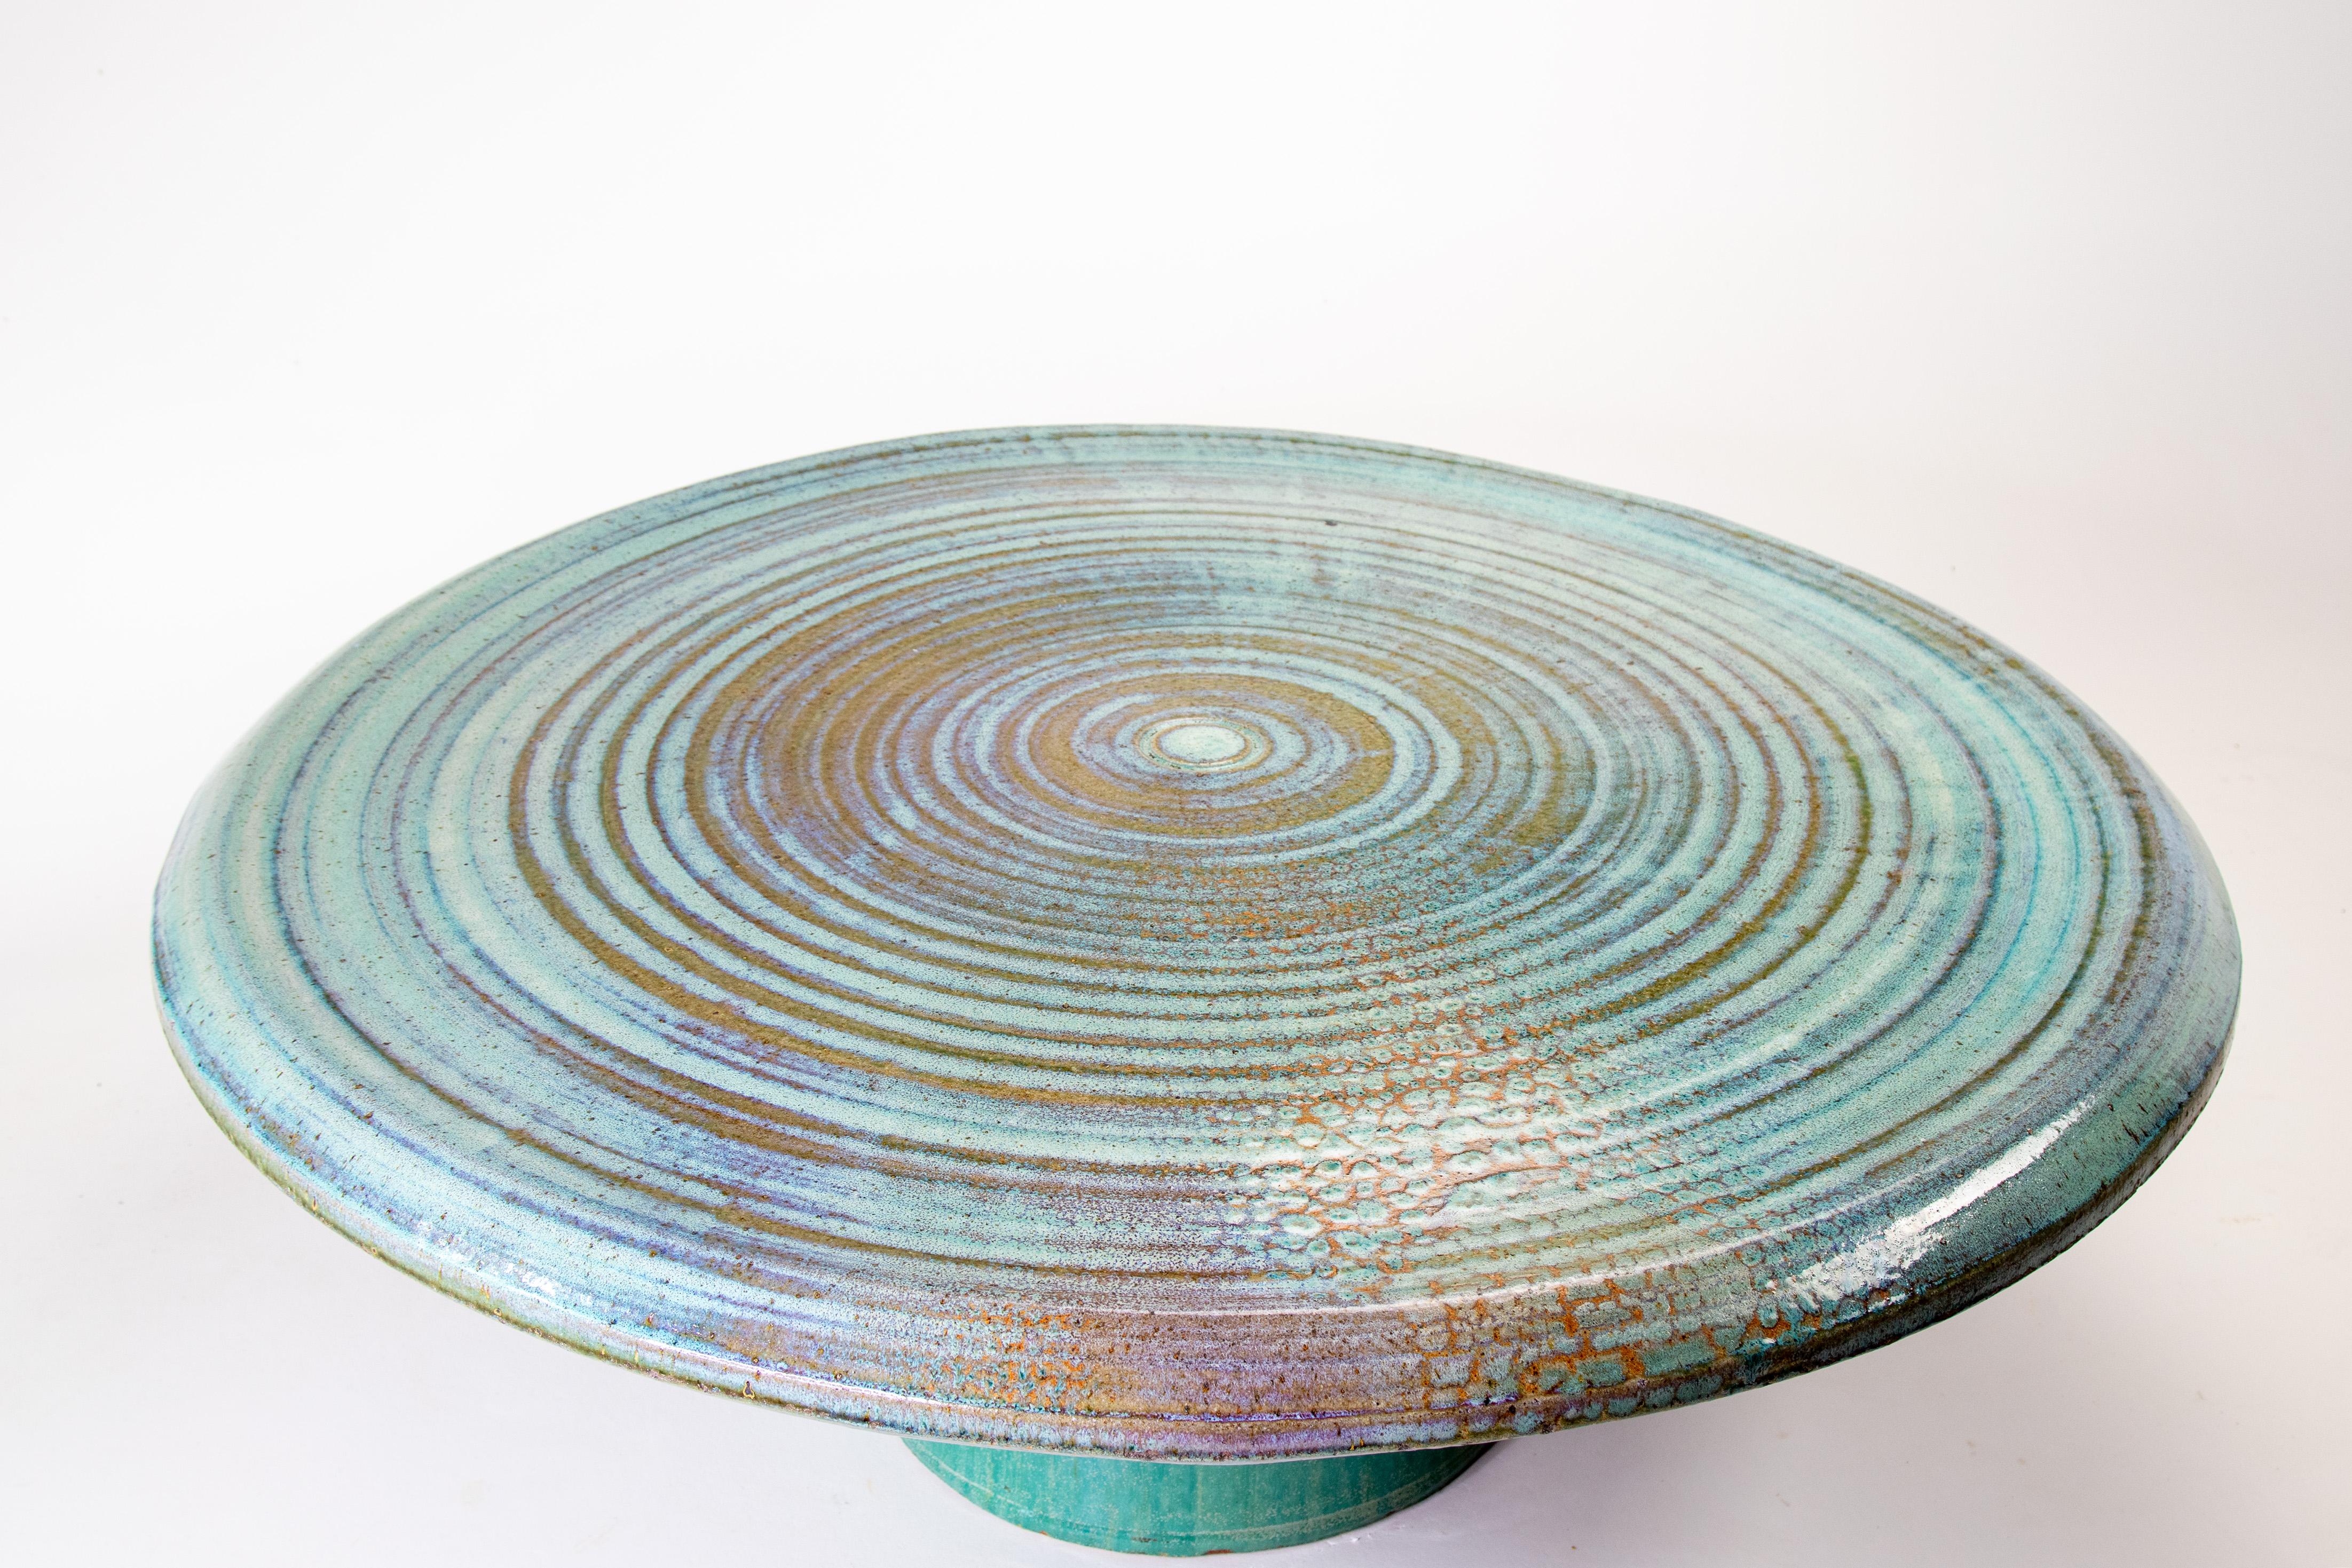 Une table basse monumentale en céramique de Joel Cottet, un céramiste de Portland Oregan. Joel Cottet a expérimenté la cuisson de céramiques de grande taille dans les années 70 et a été l'un des premiers à réussir à produire des pièces en céramique